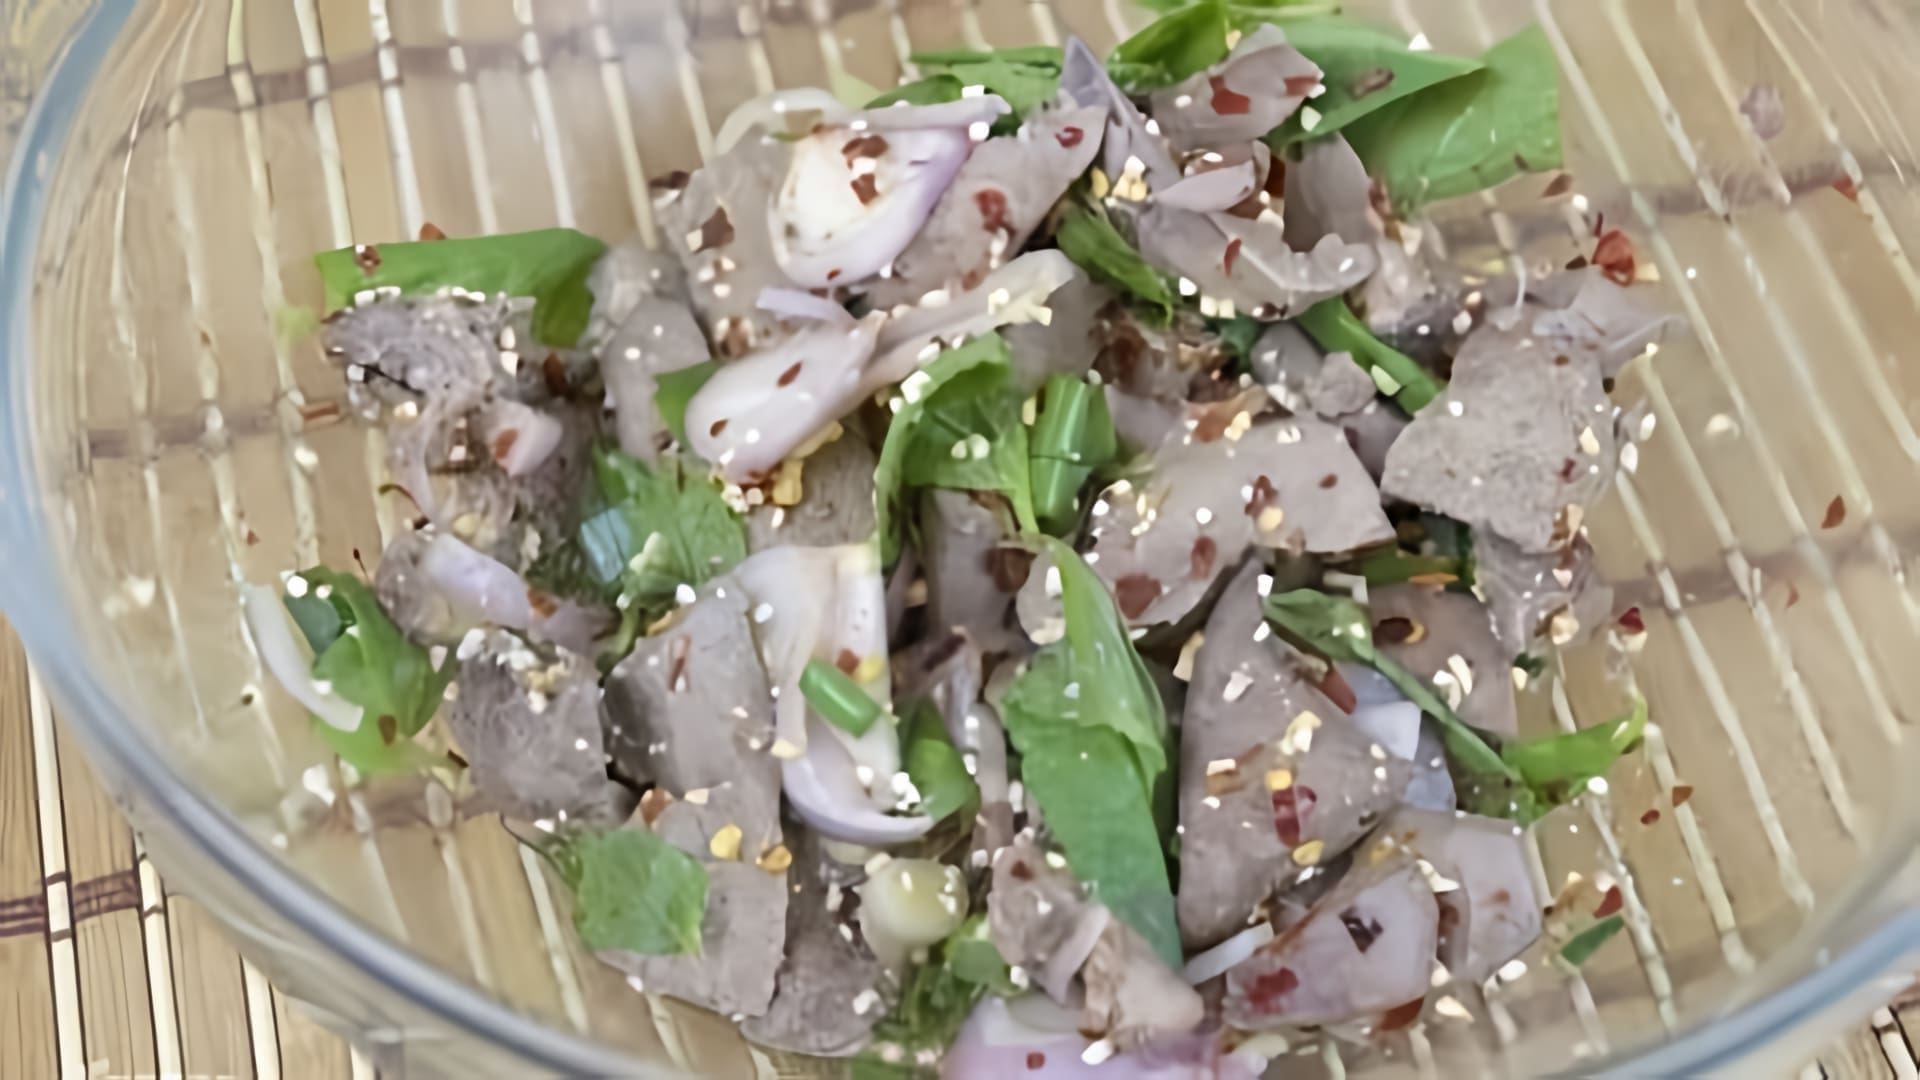 В этом видео демонстрируется рецепт приготовления салата из свиной печени